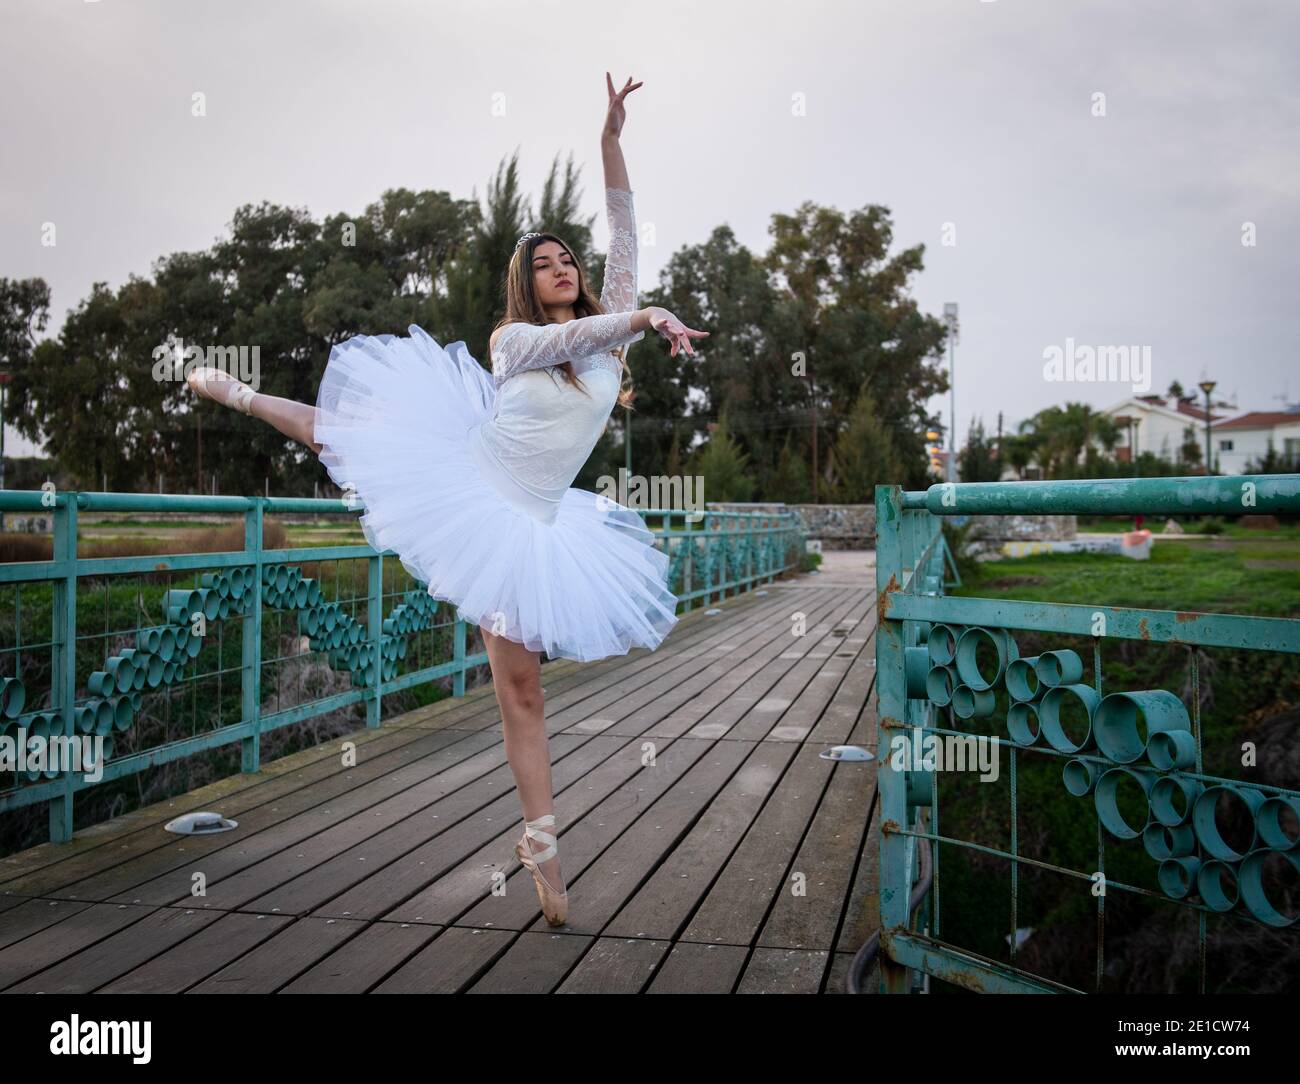 Ragazza ballerina adolescente che indossa abiti bianchi e scarpe da ballo punta balletto all'aperto Foto Stock